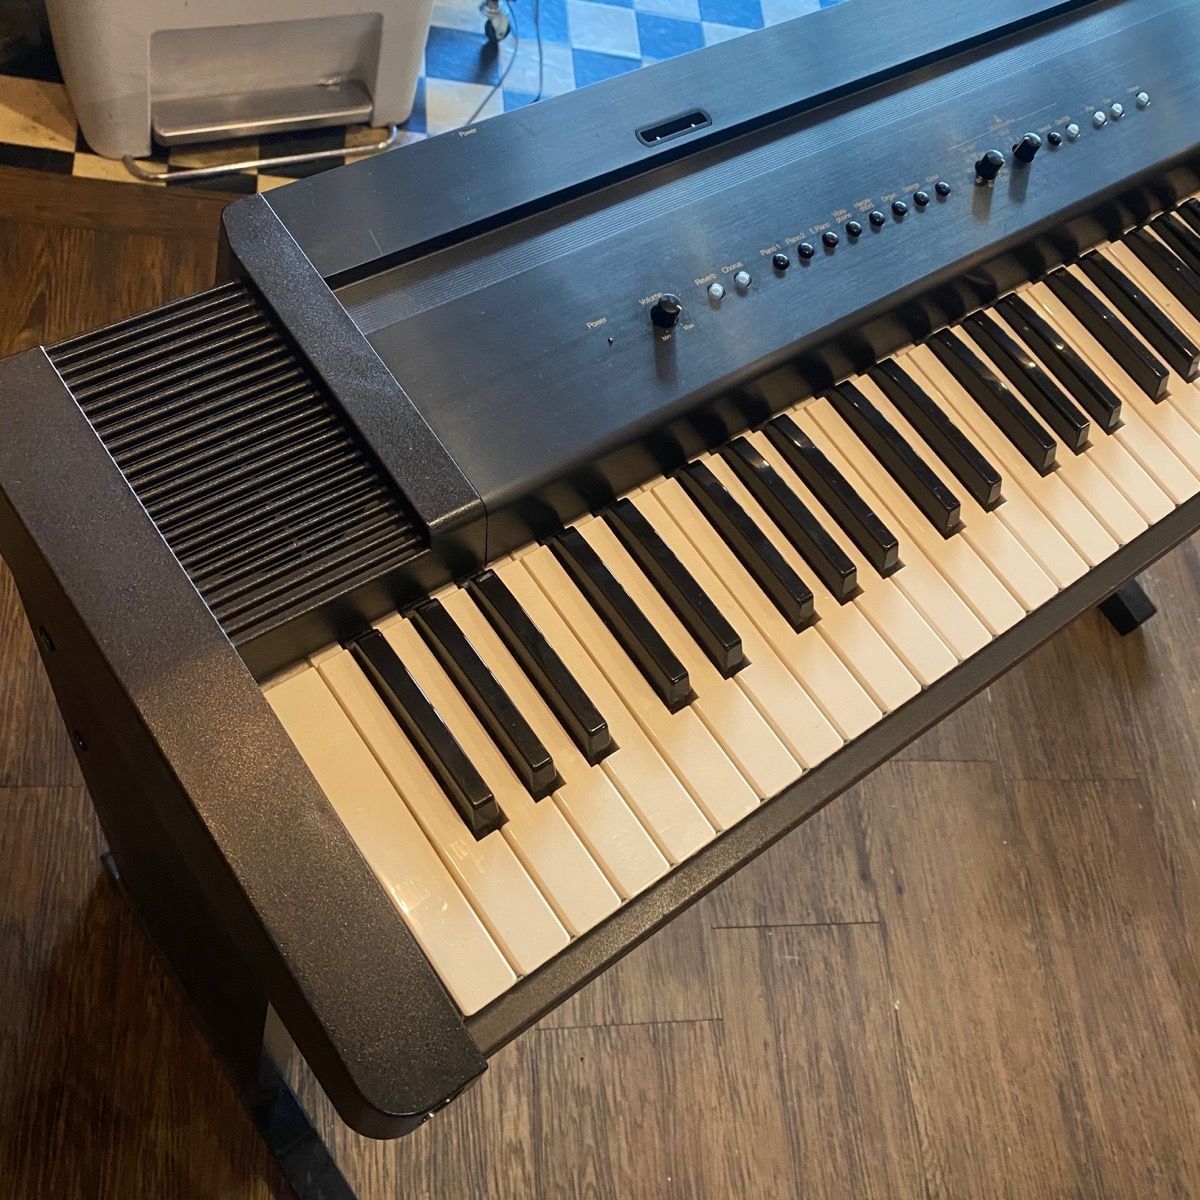 Roland EP-70 Keyboard ローランド 電子ピアノ -GrunSound-x003